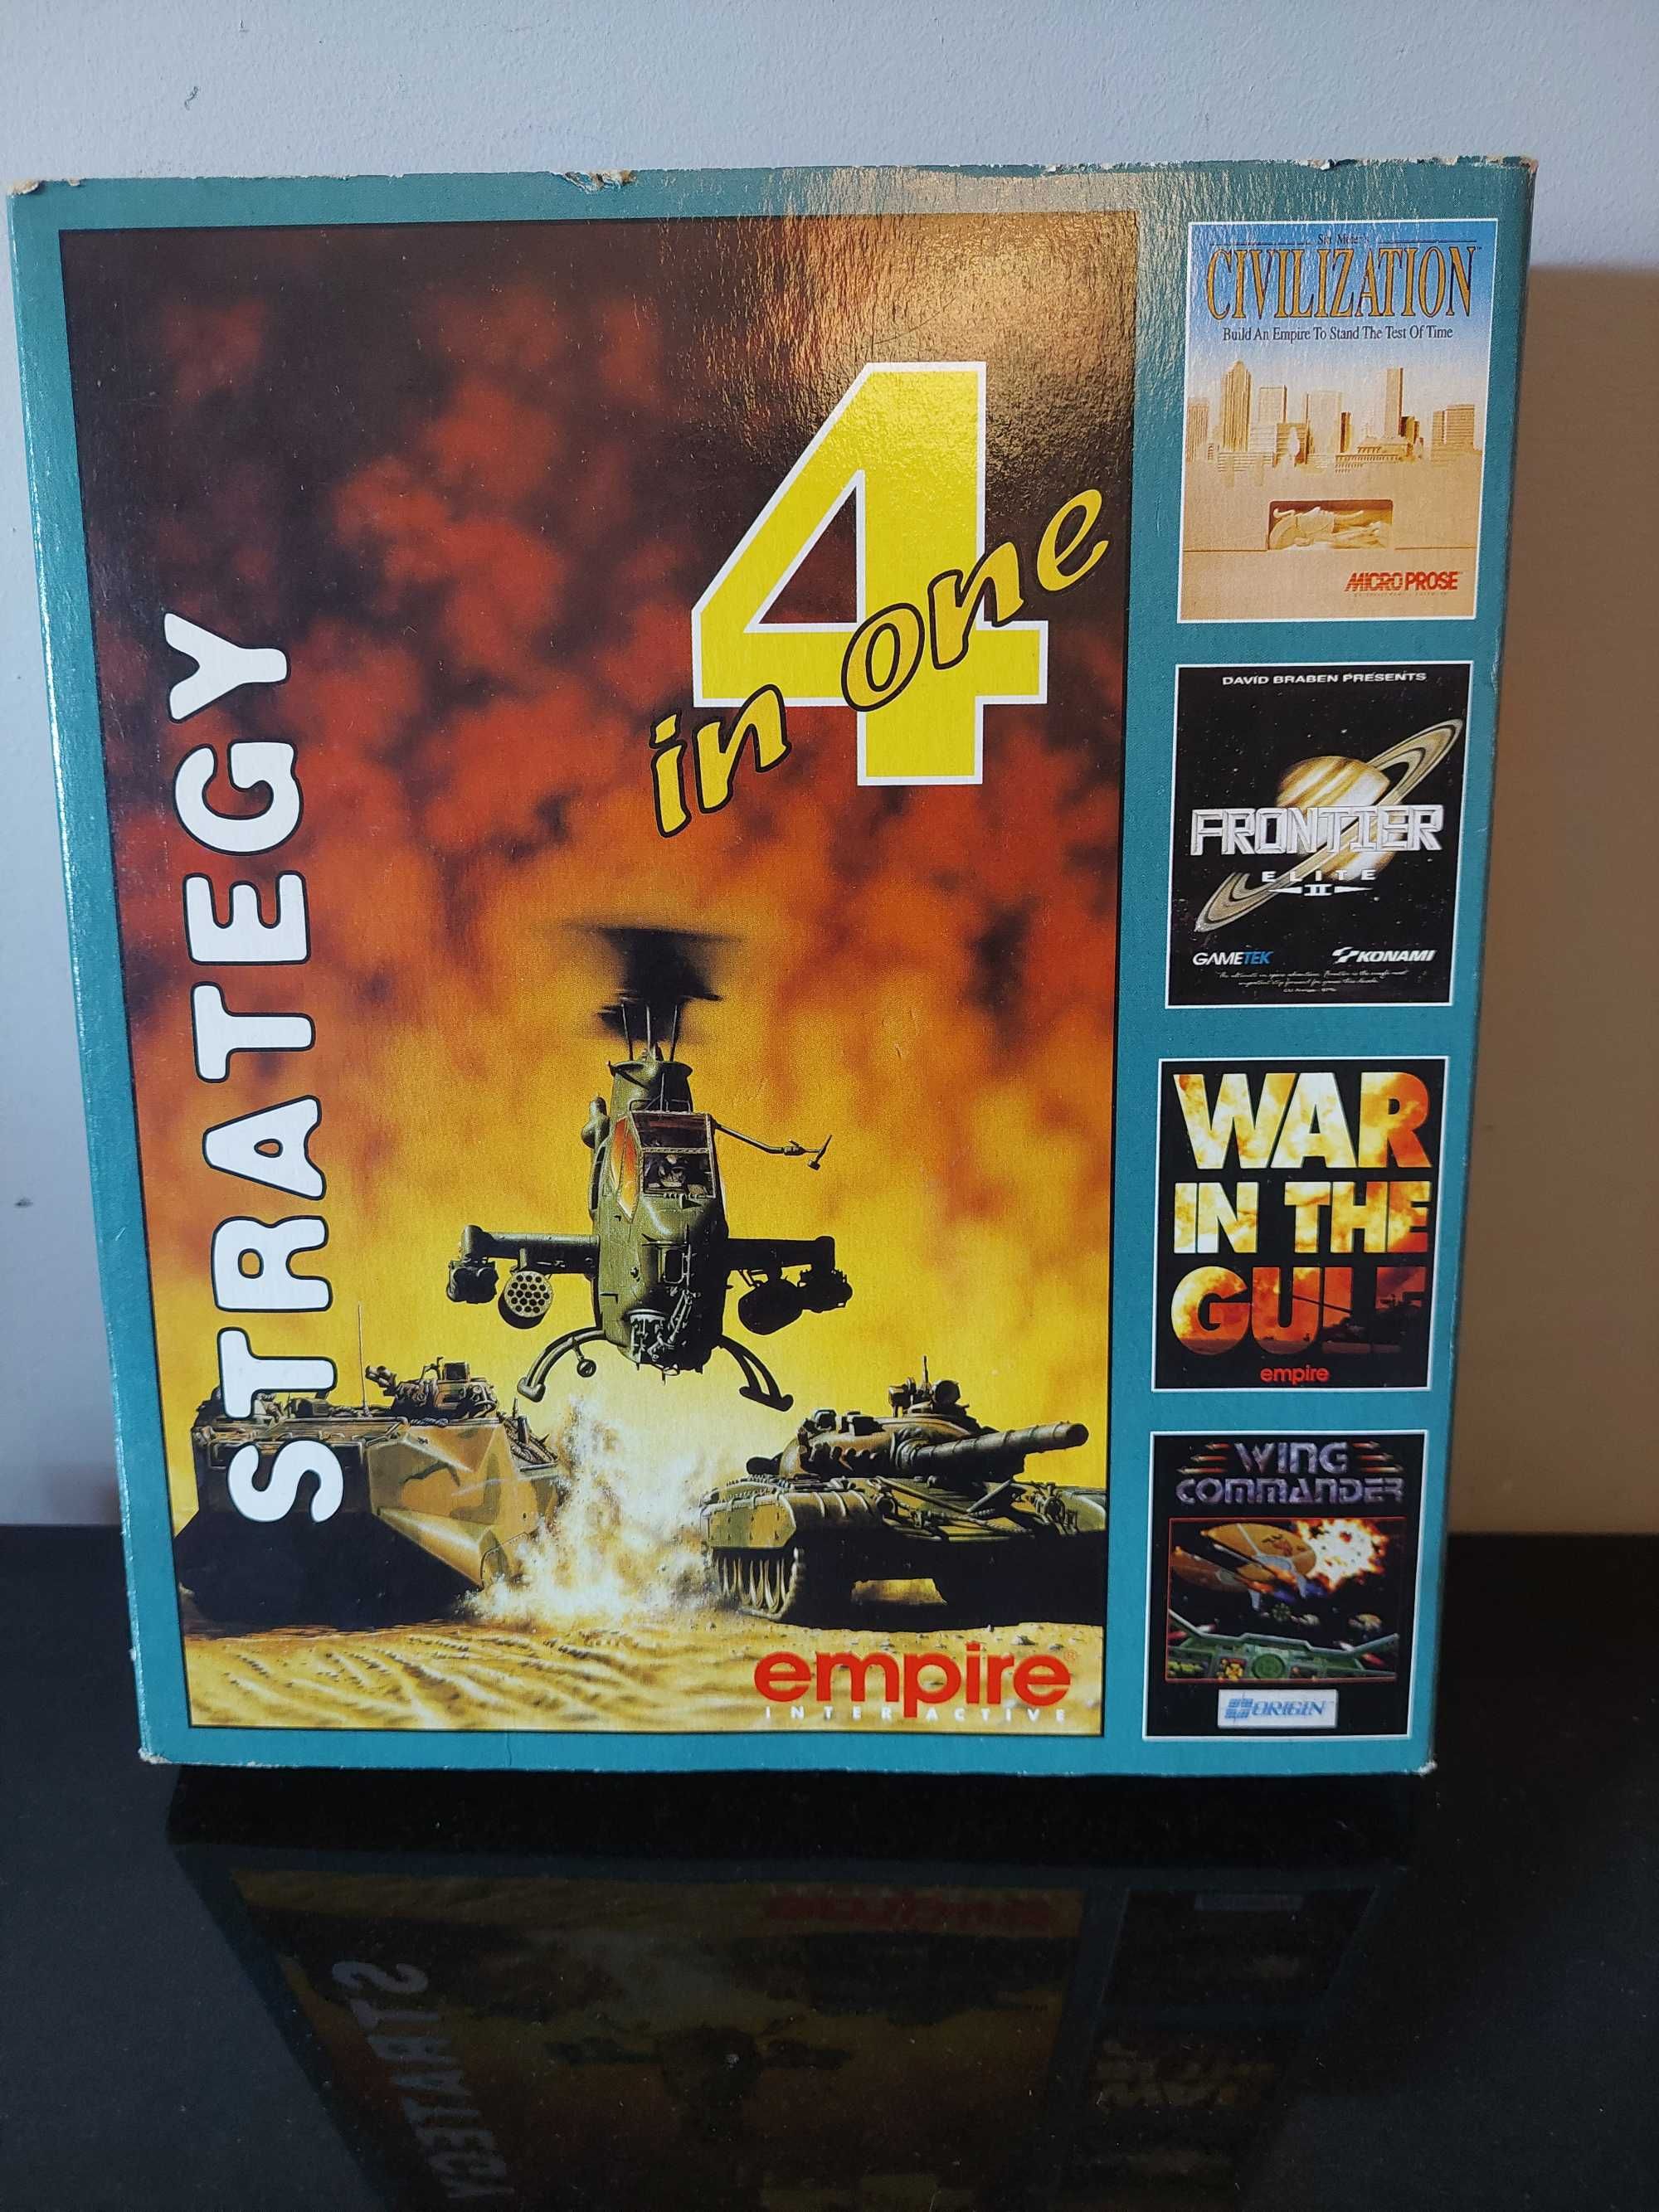 Cywilizacja Frontier Elite II War In The Gulf Wing Commande gra PC DOS